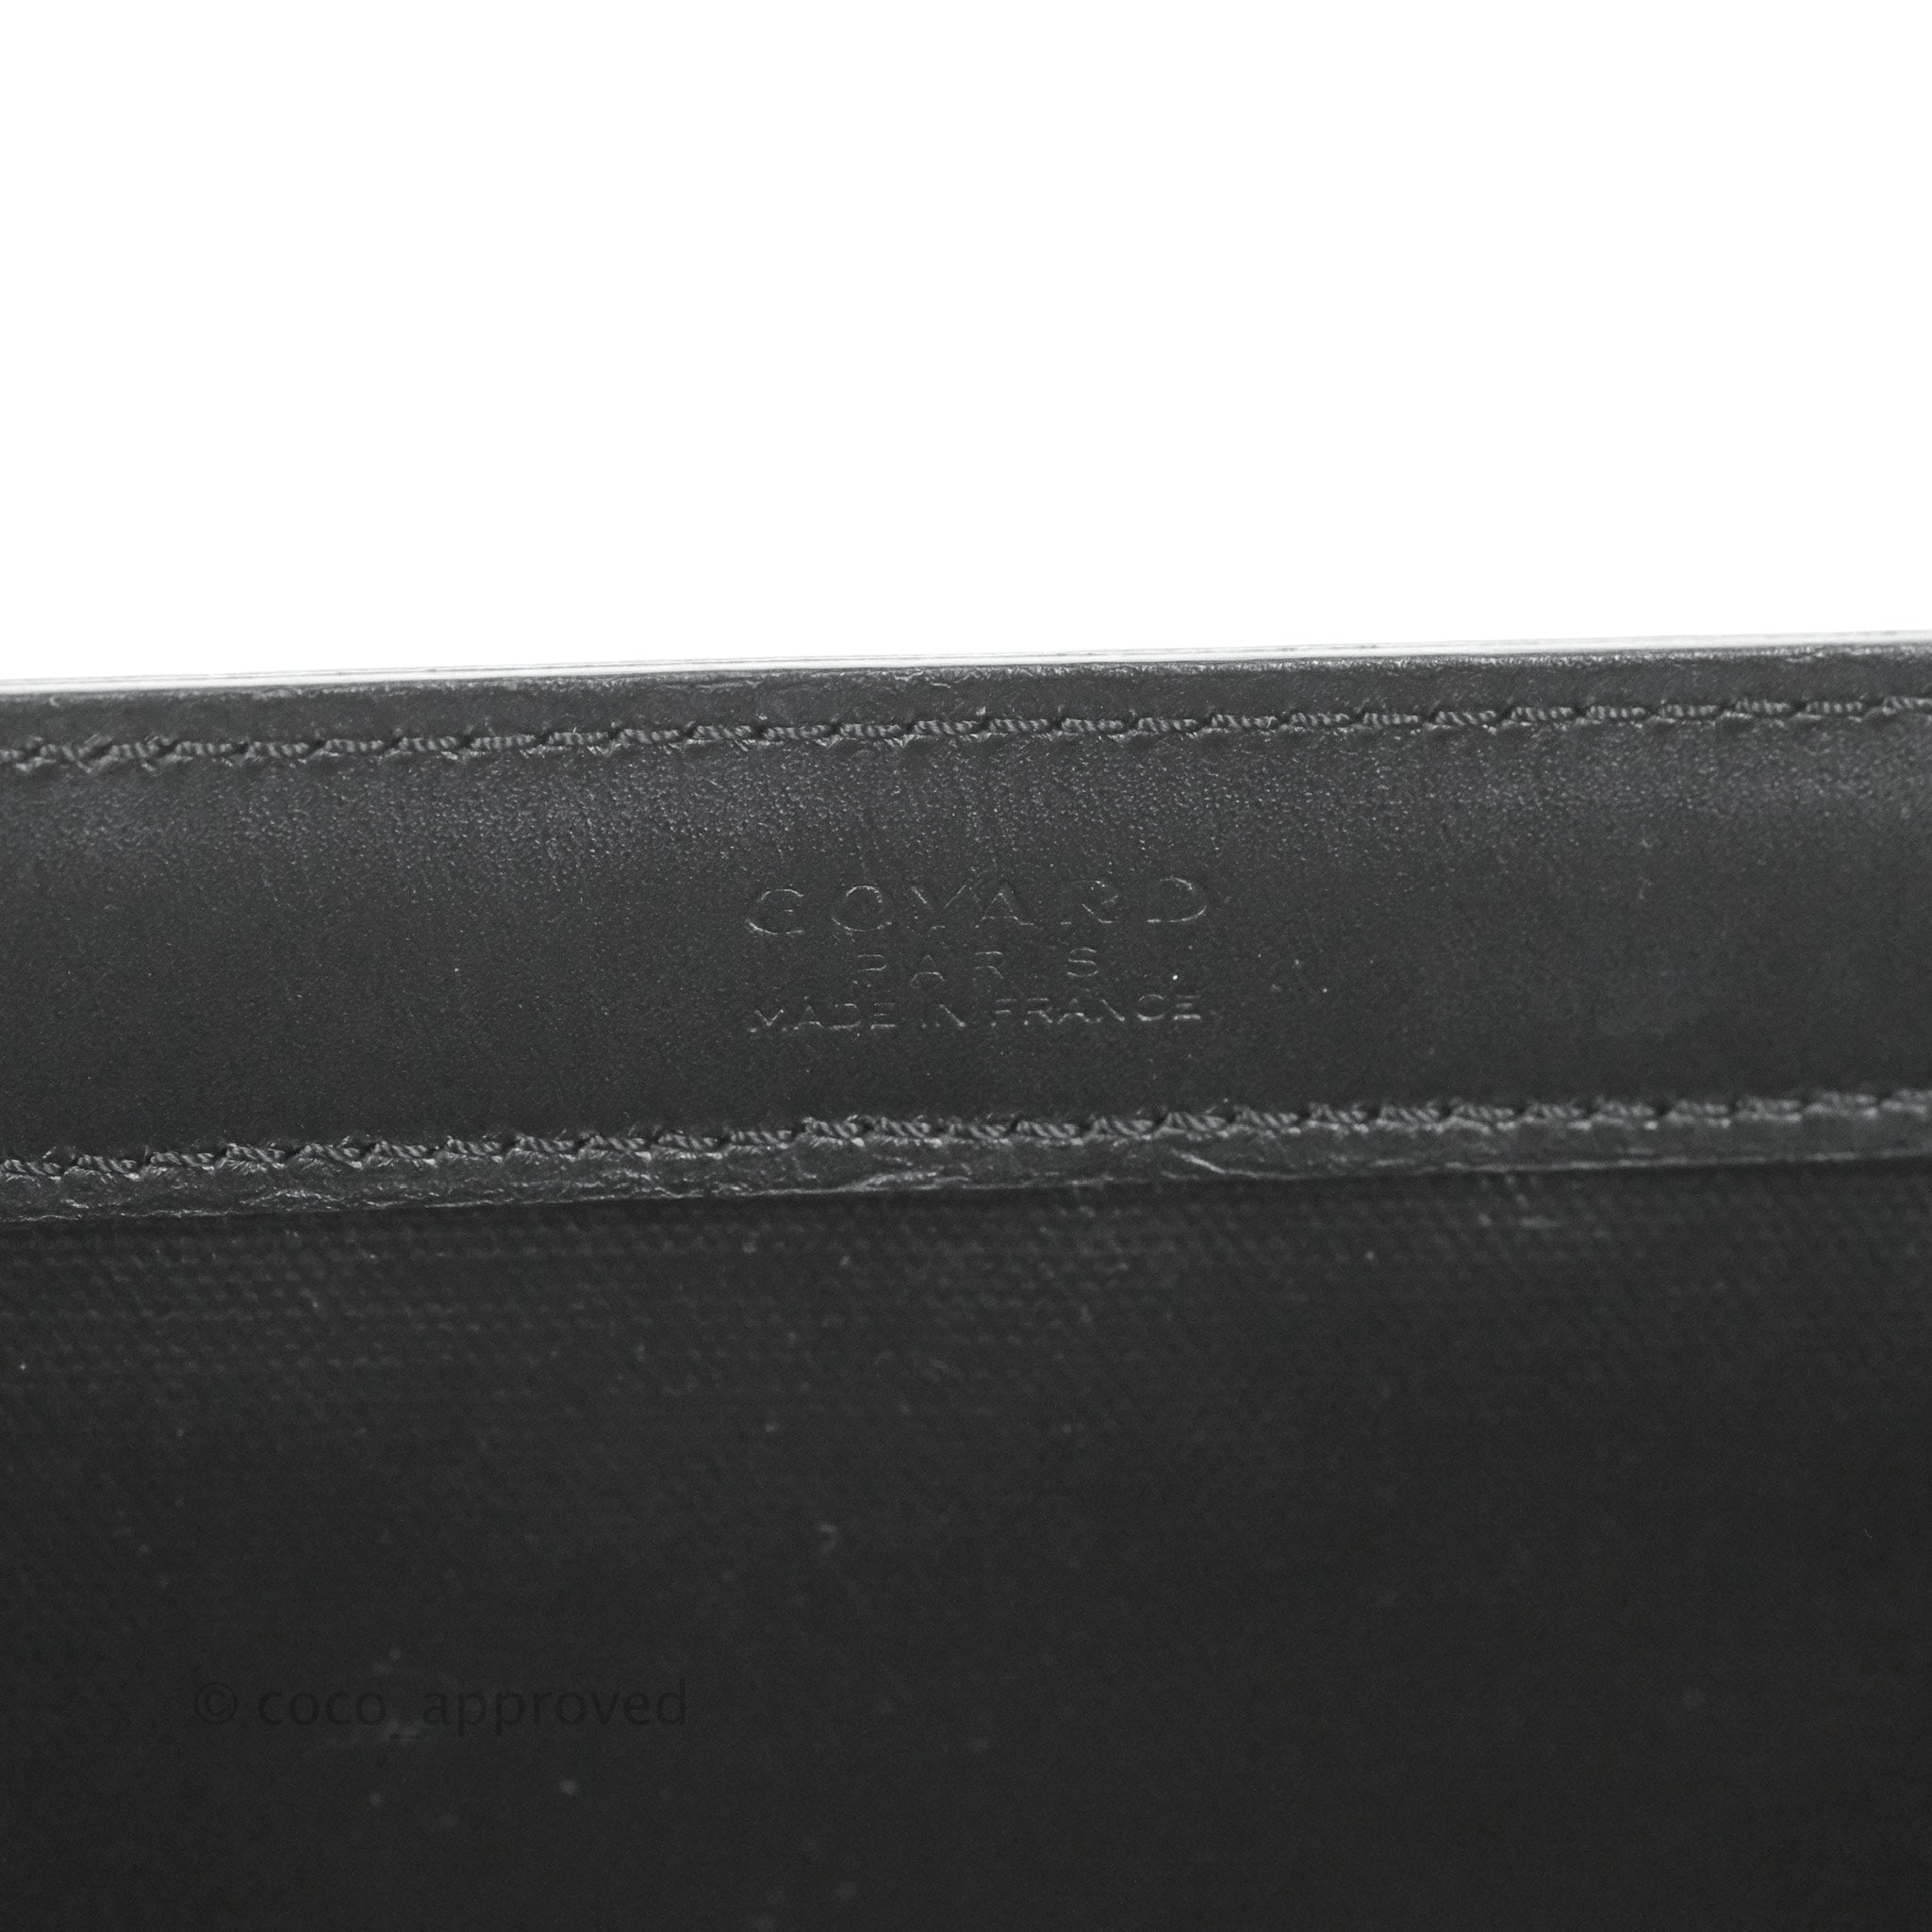 GOYARD Bellechasse PM Tote Bag PVC Leather Black Brown Purse 90189066